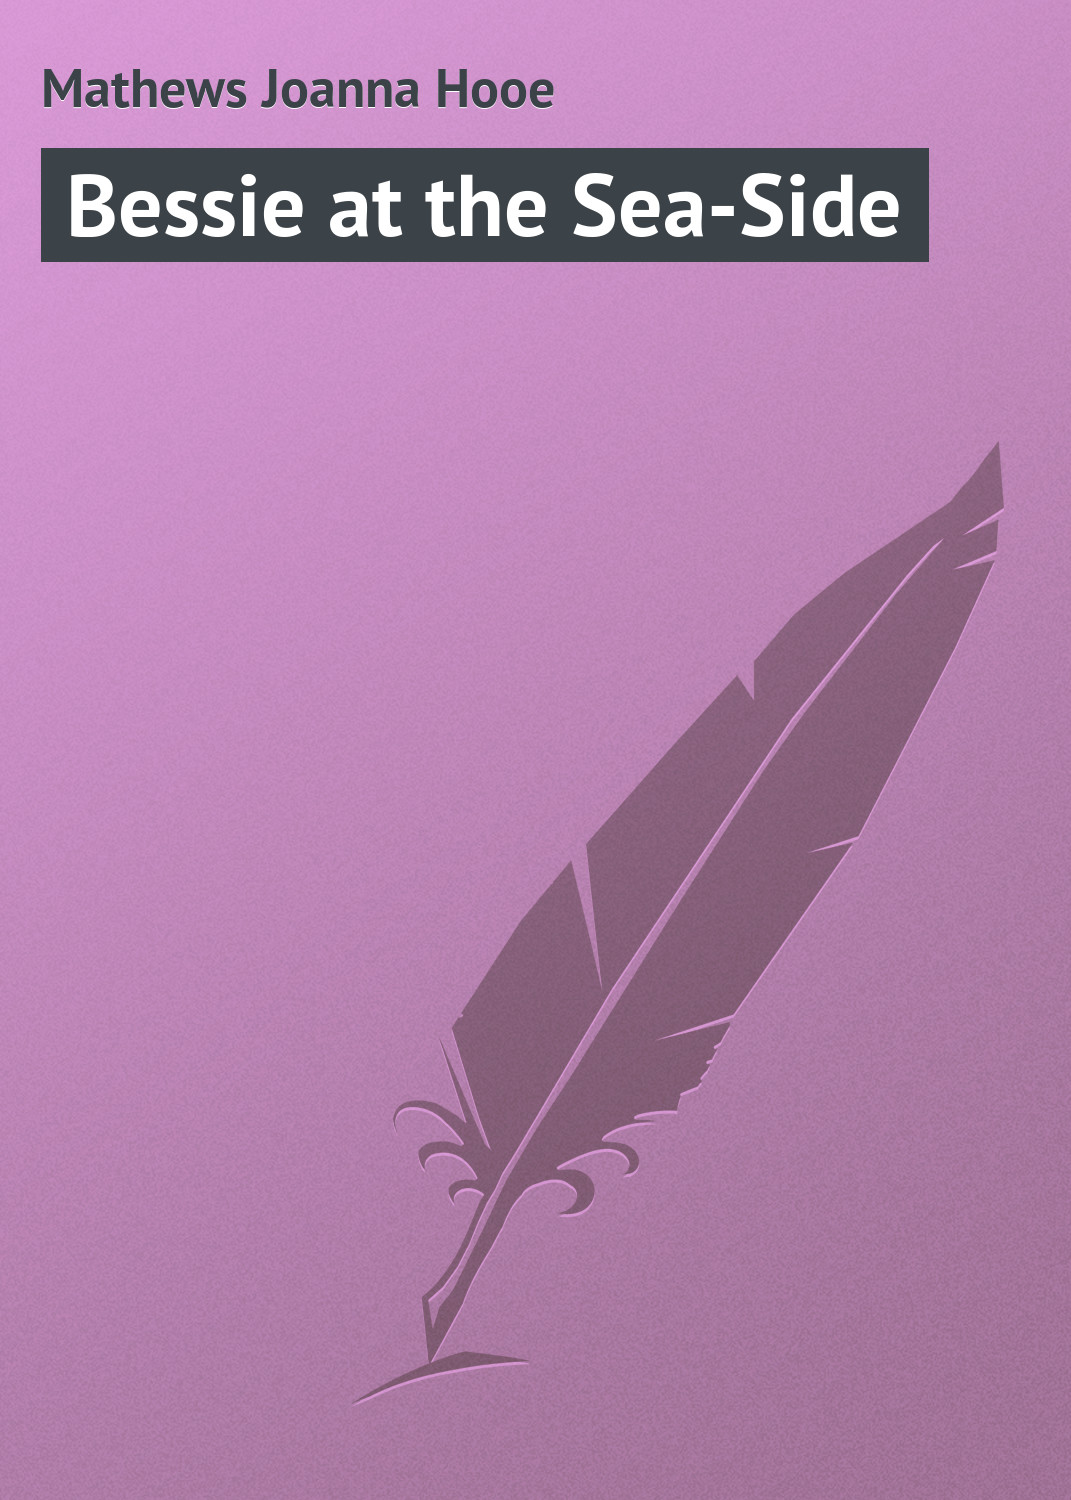 Книга Bessie at the Sea-Side из серии , созданная Joanna Mathews, может относится к жанру Зарубежная классика. Стоимость электронной книги Bessie at the Sea-Side с идентификатором 23164899 составляет 5.99 руб.